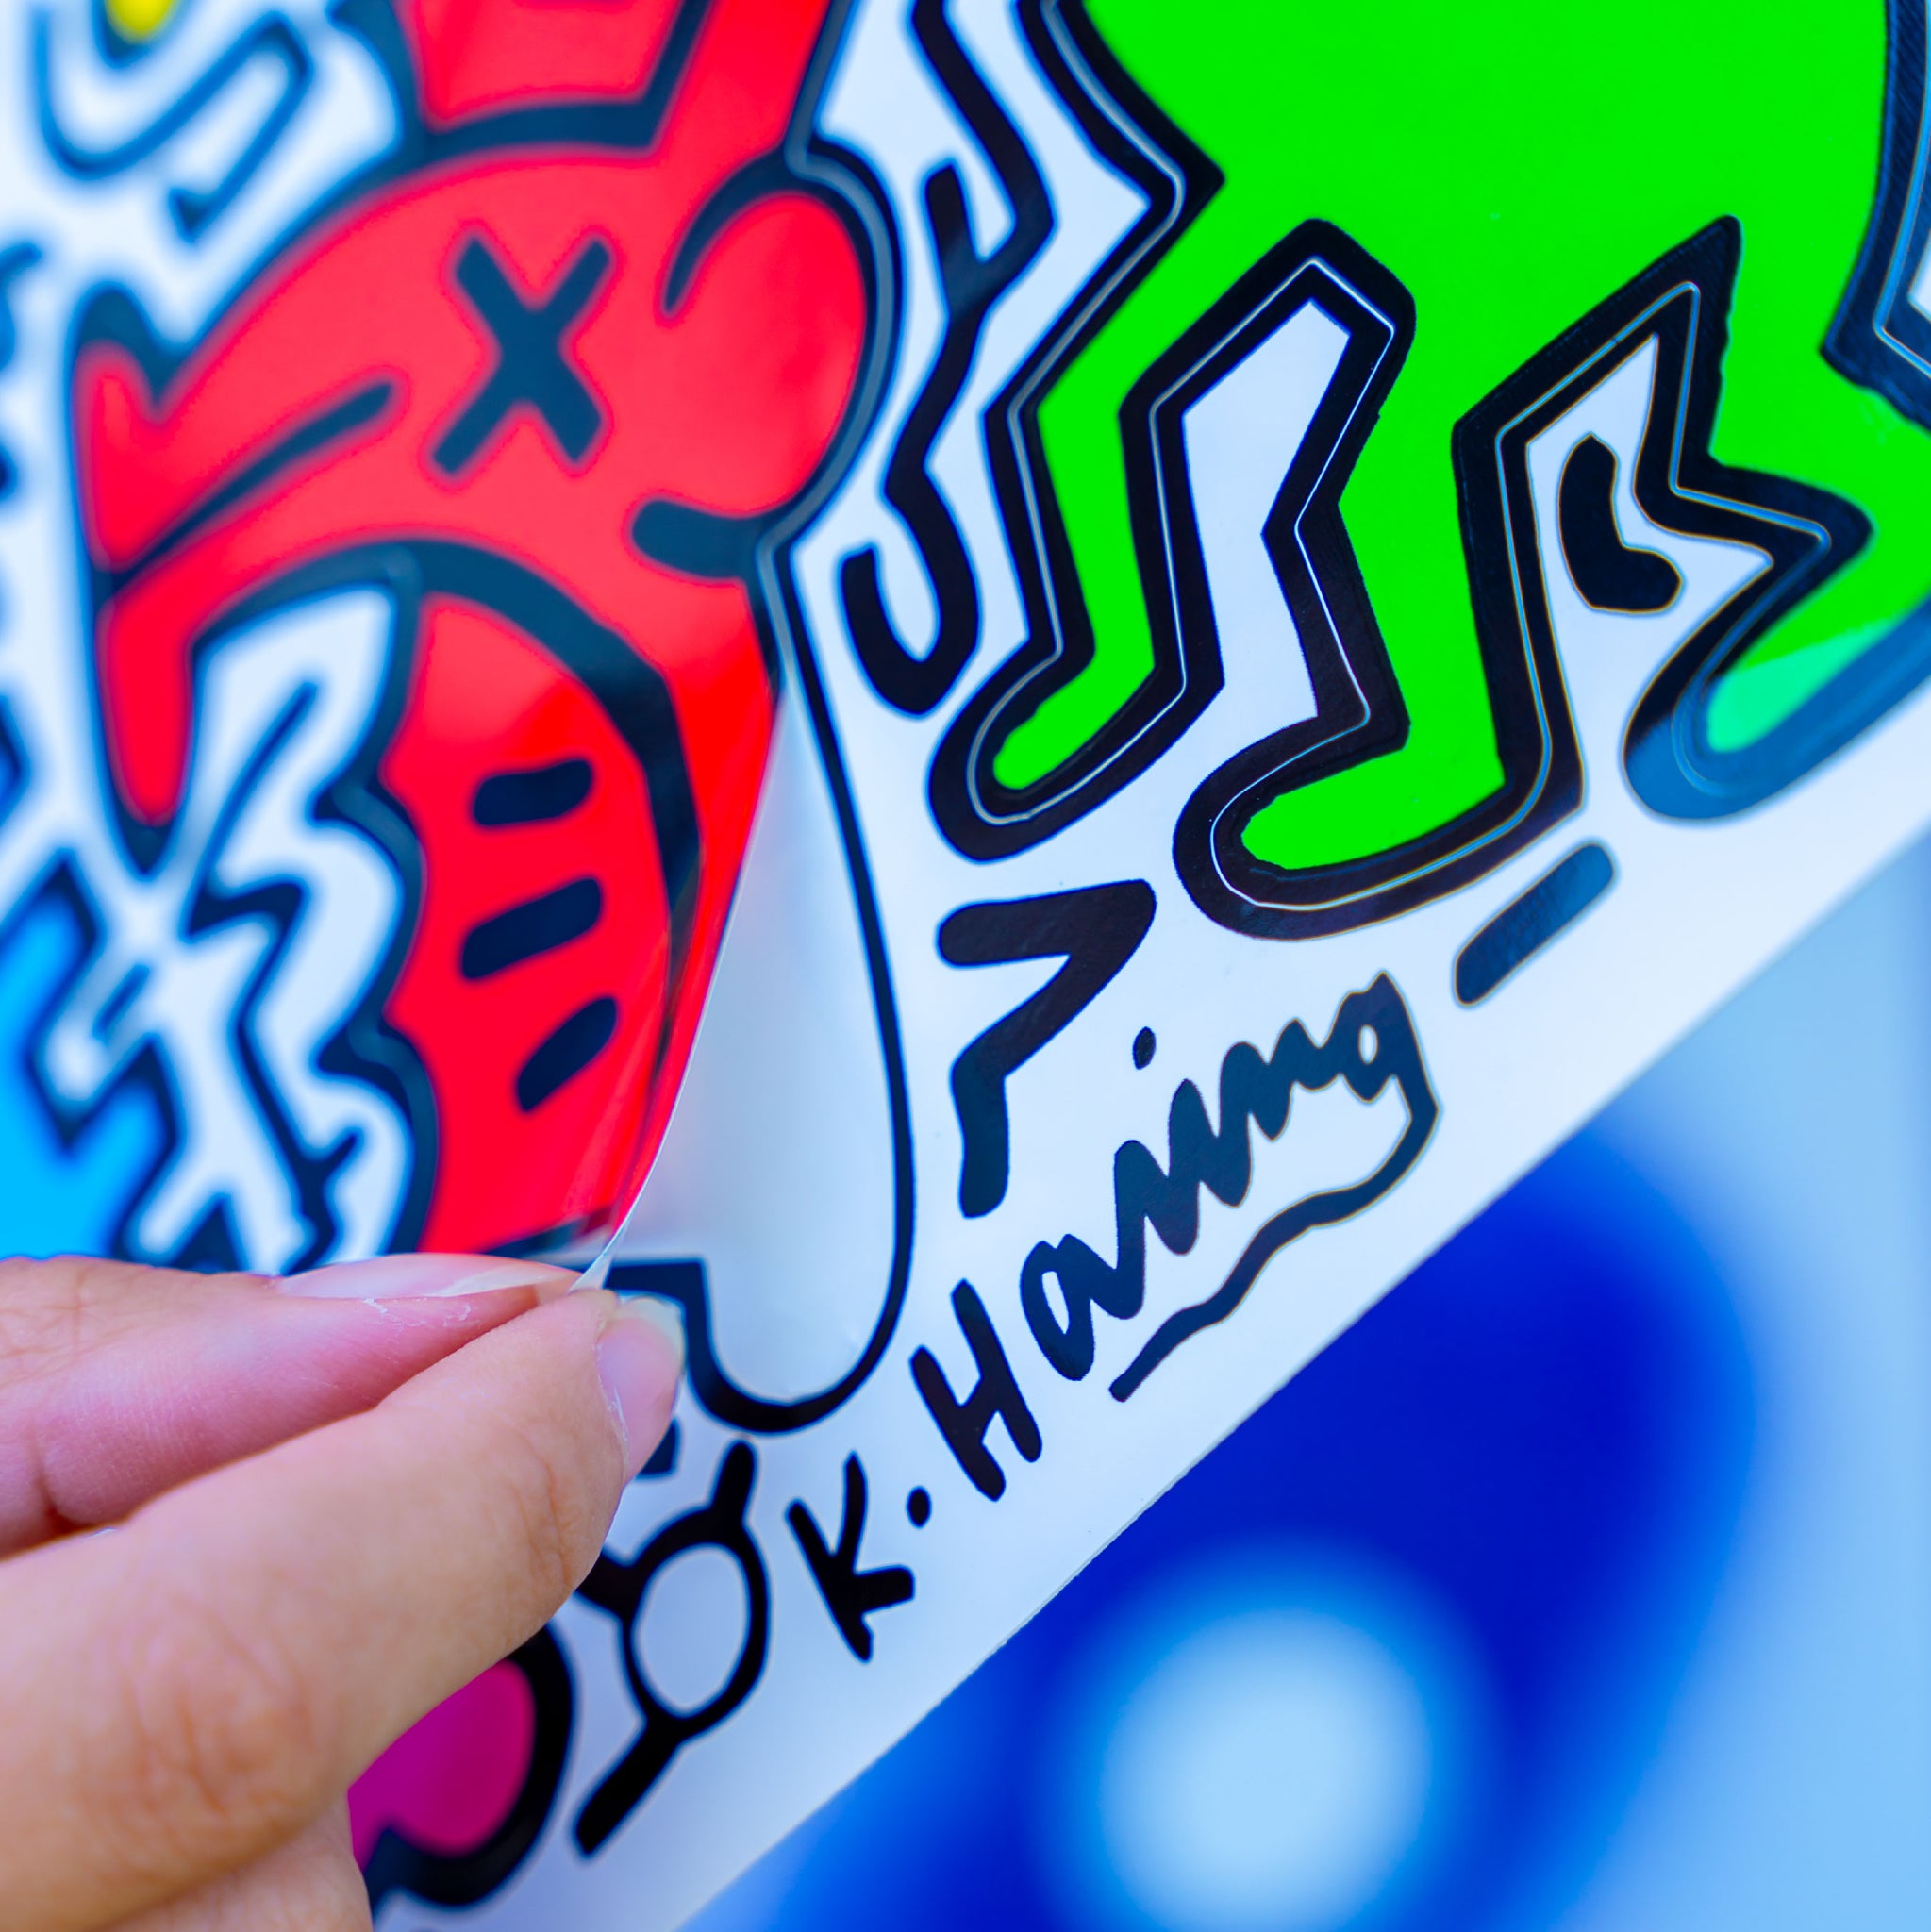 Keith Haring Pop Shop Tokyo